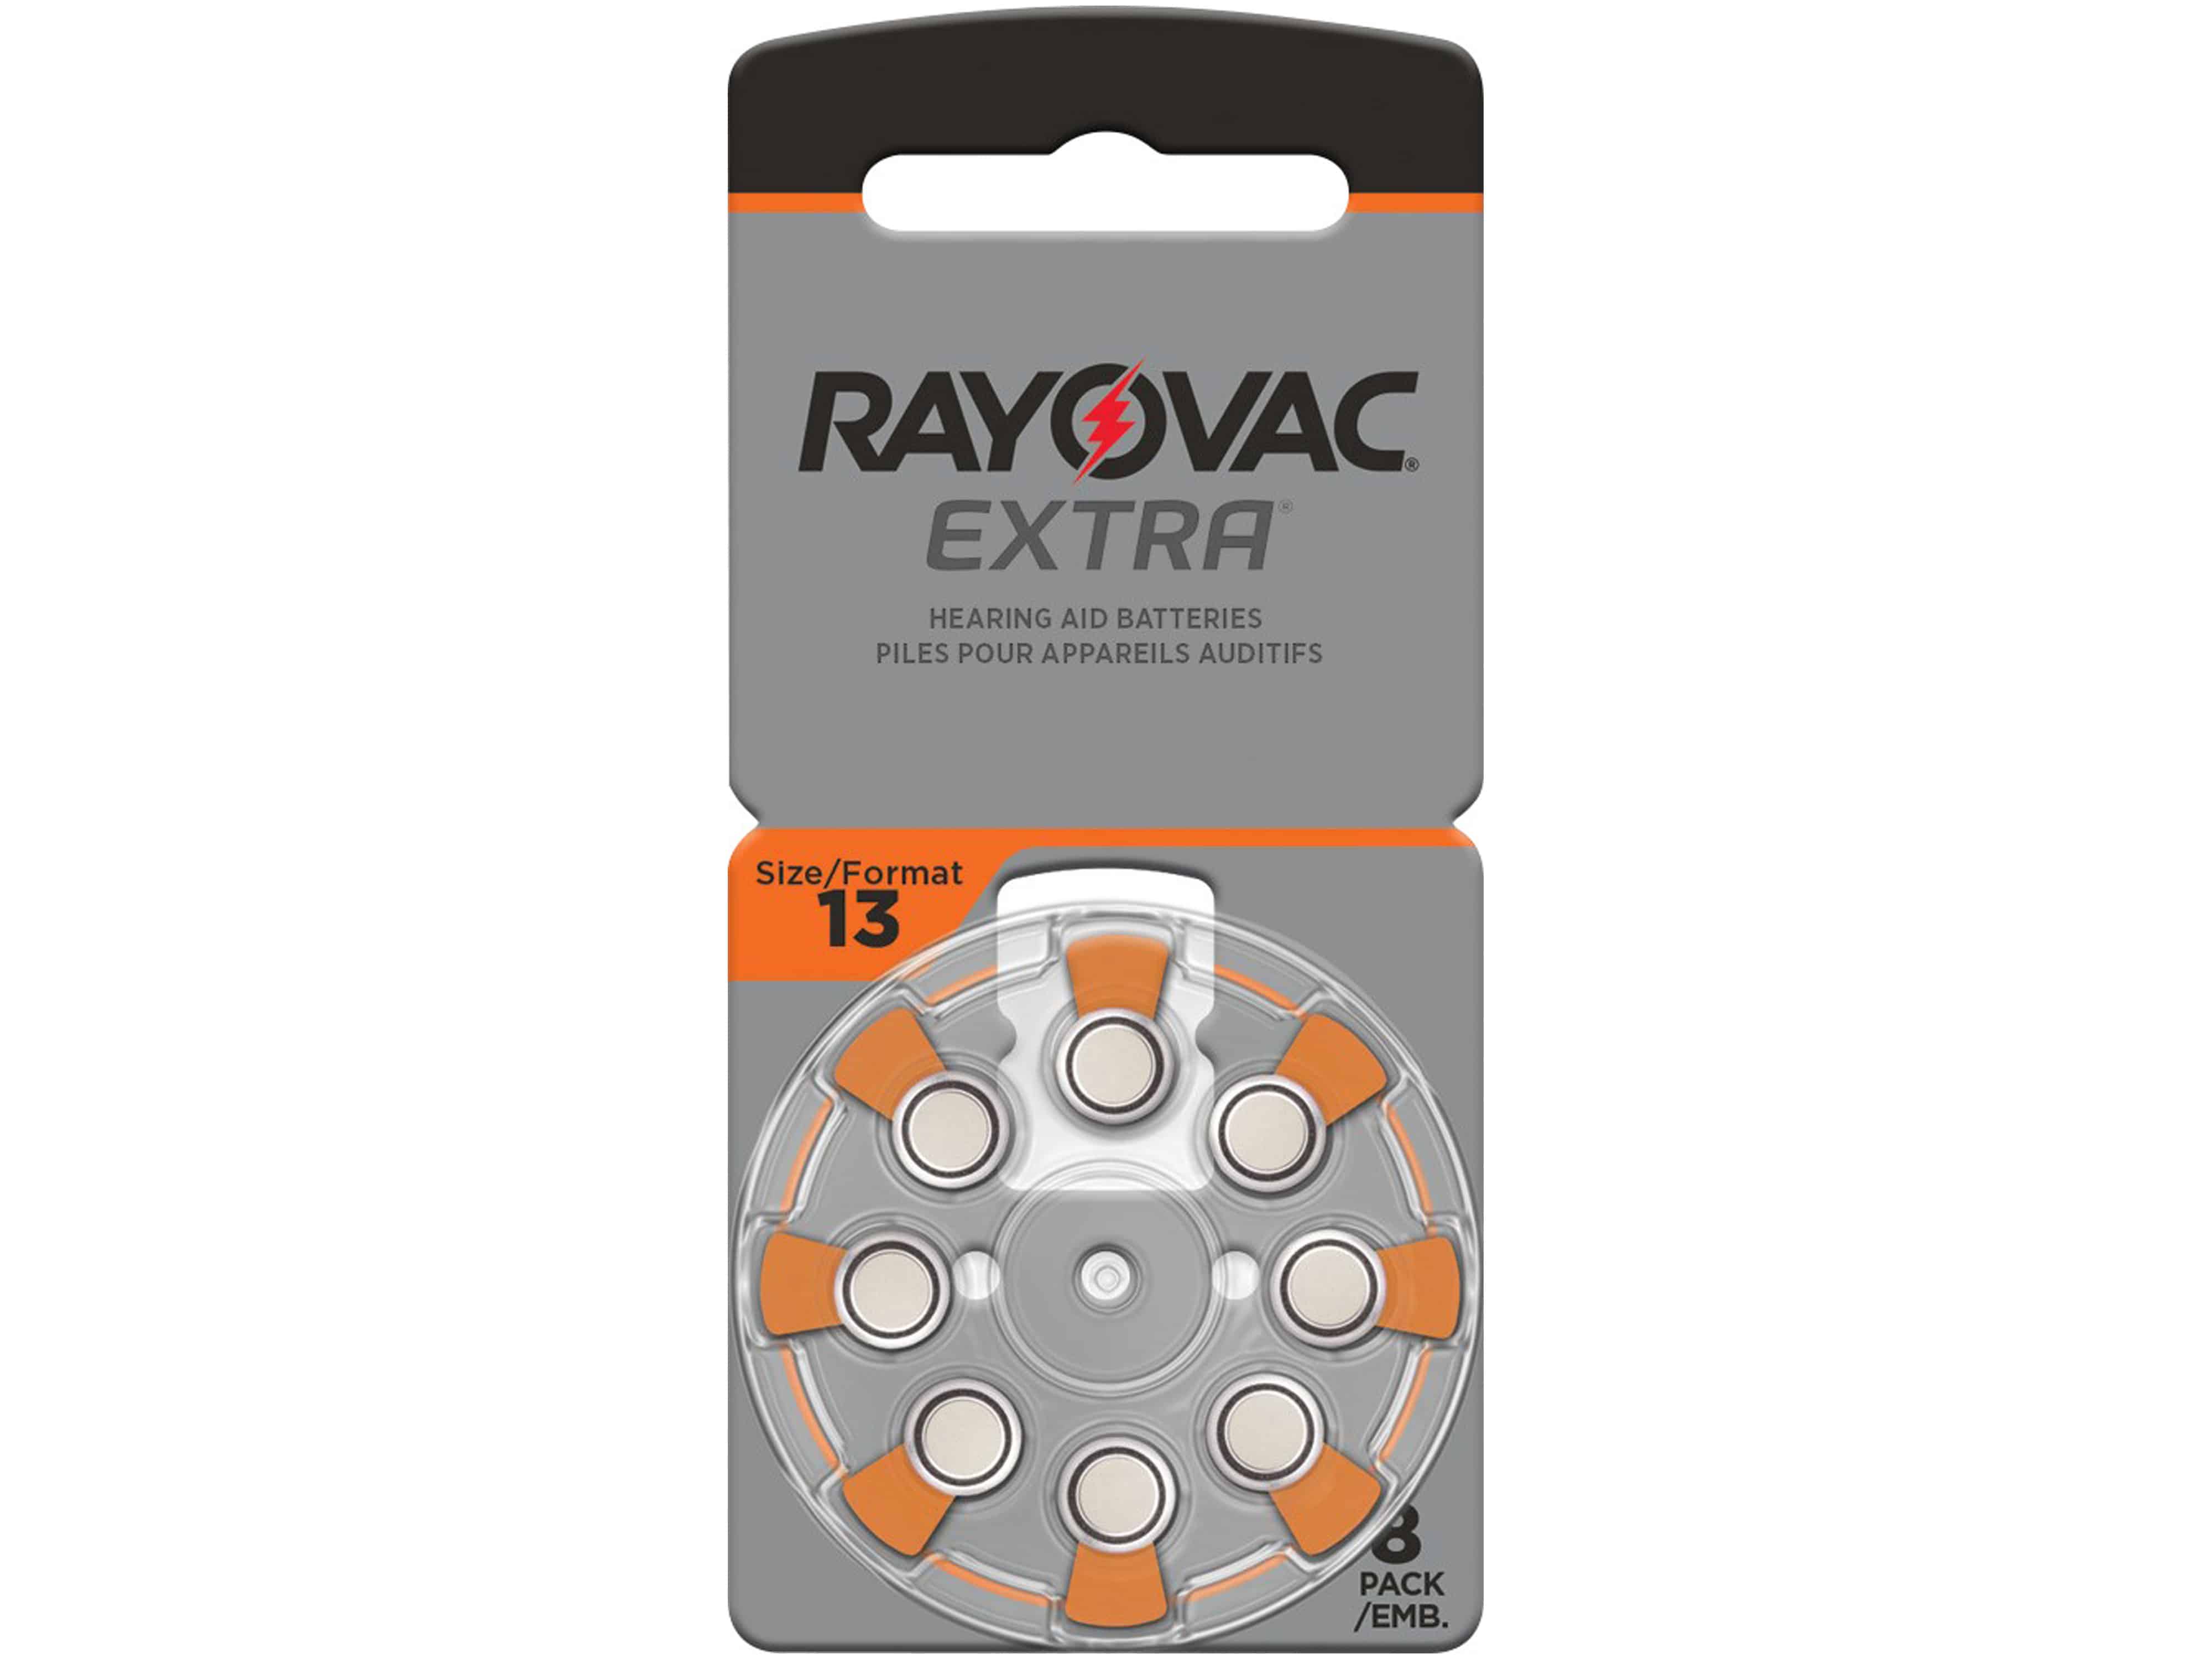 RAYOVAC Hörgeräte-Batterie, Größe 13, 8 Stück